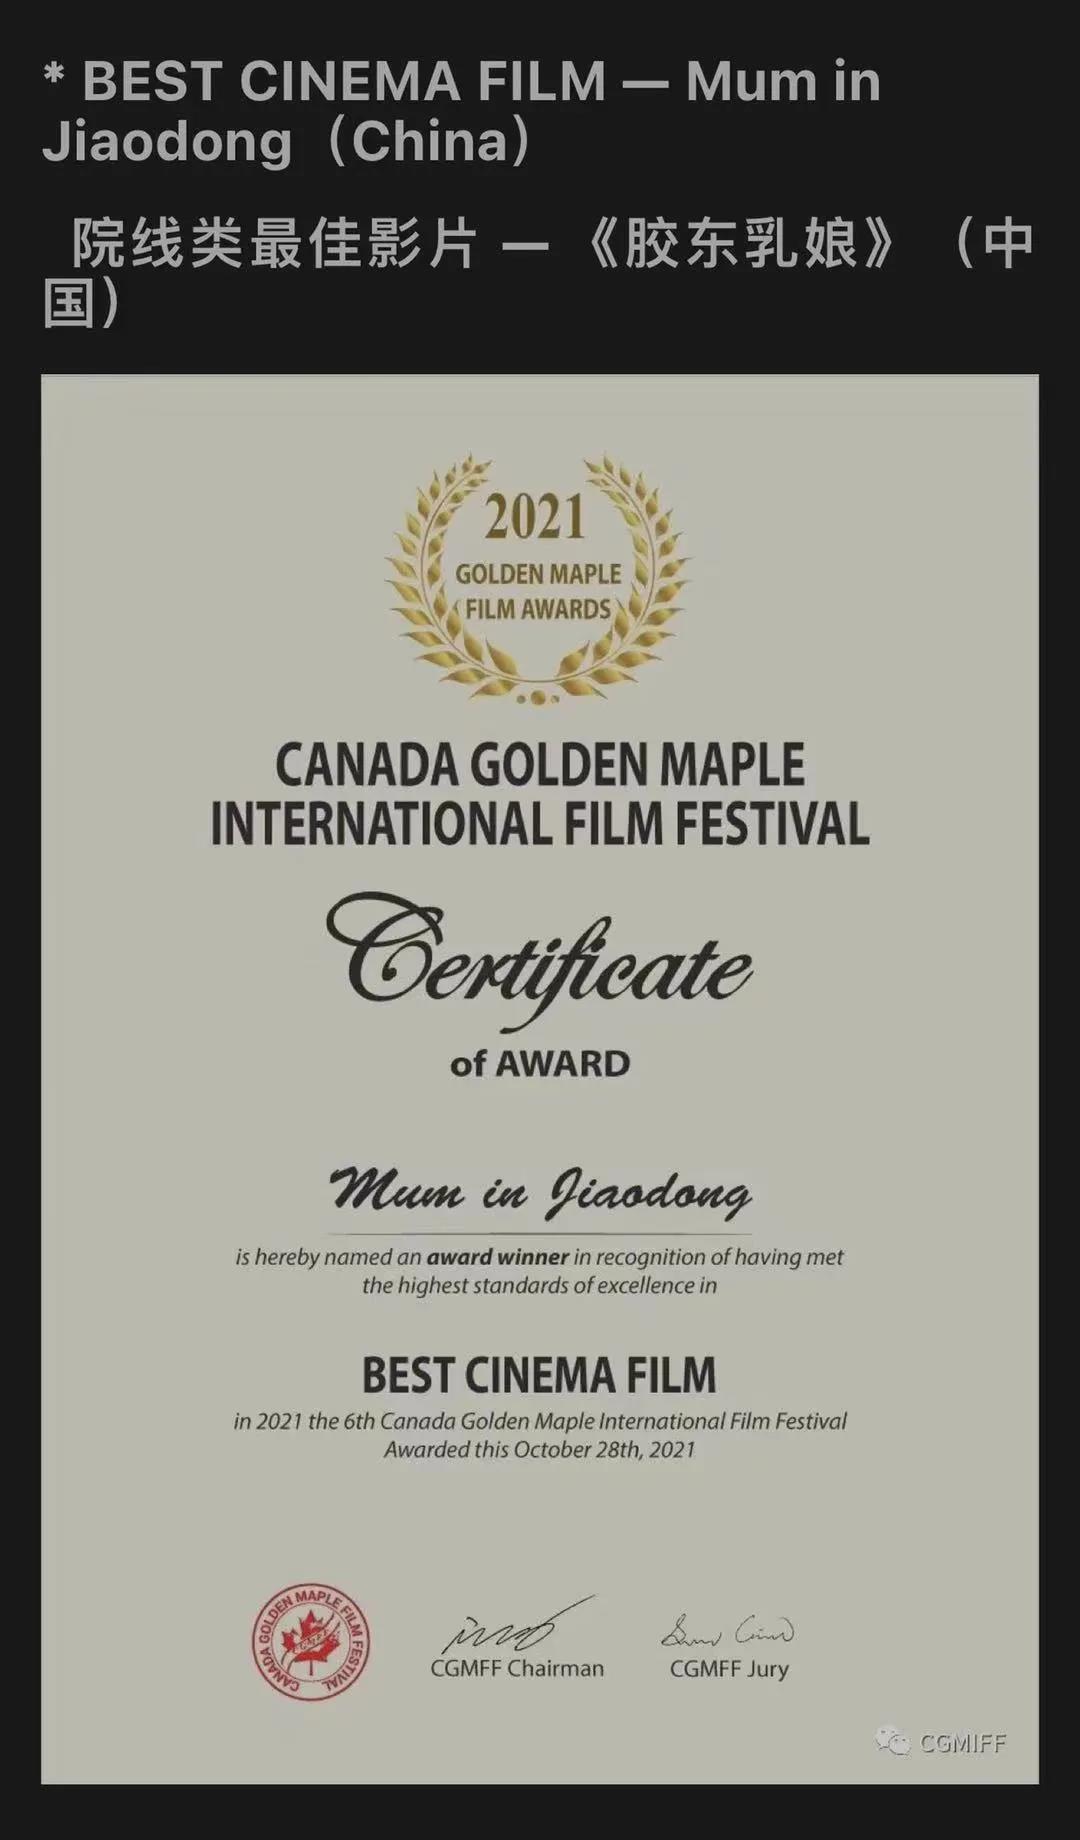 电影《胶东乳娘》获最佳影片、最佳原创音乐两项国际大奖